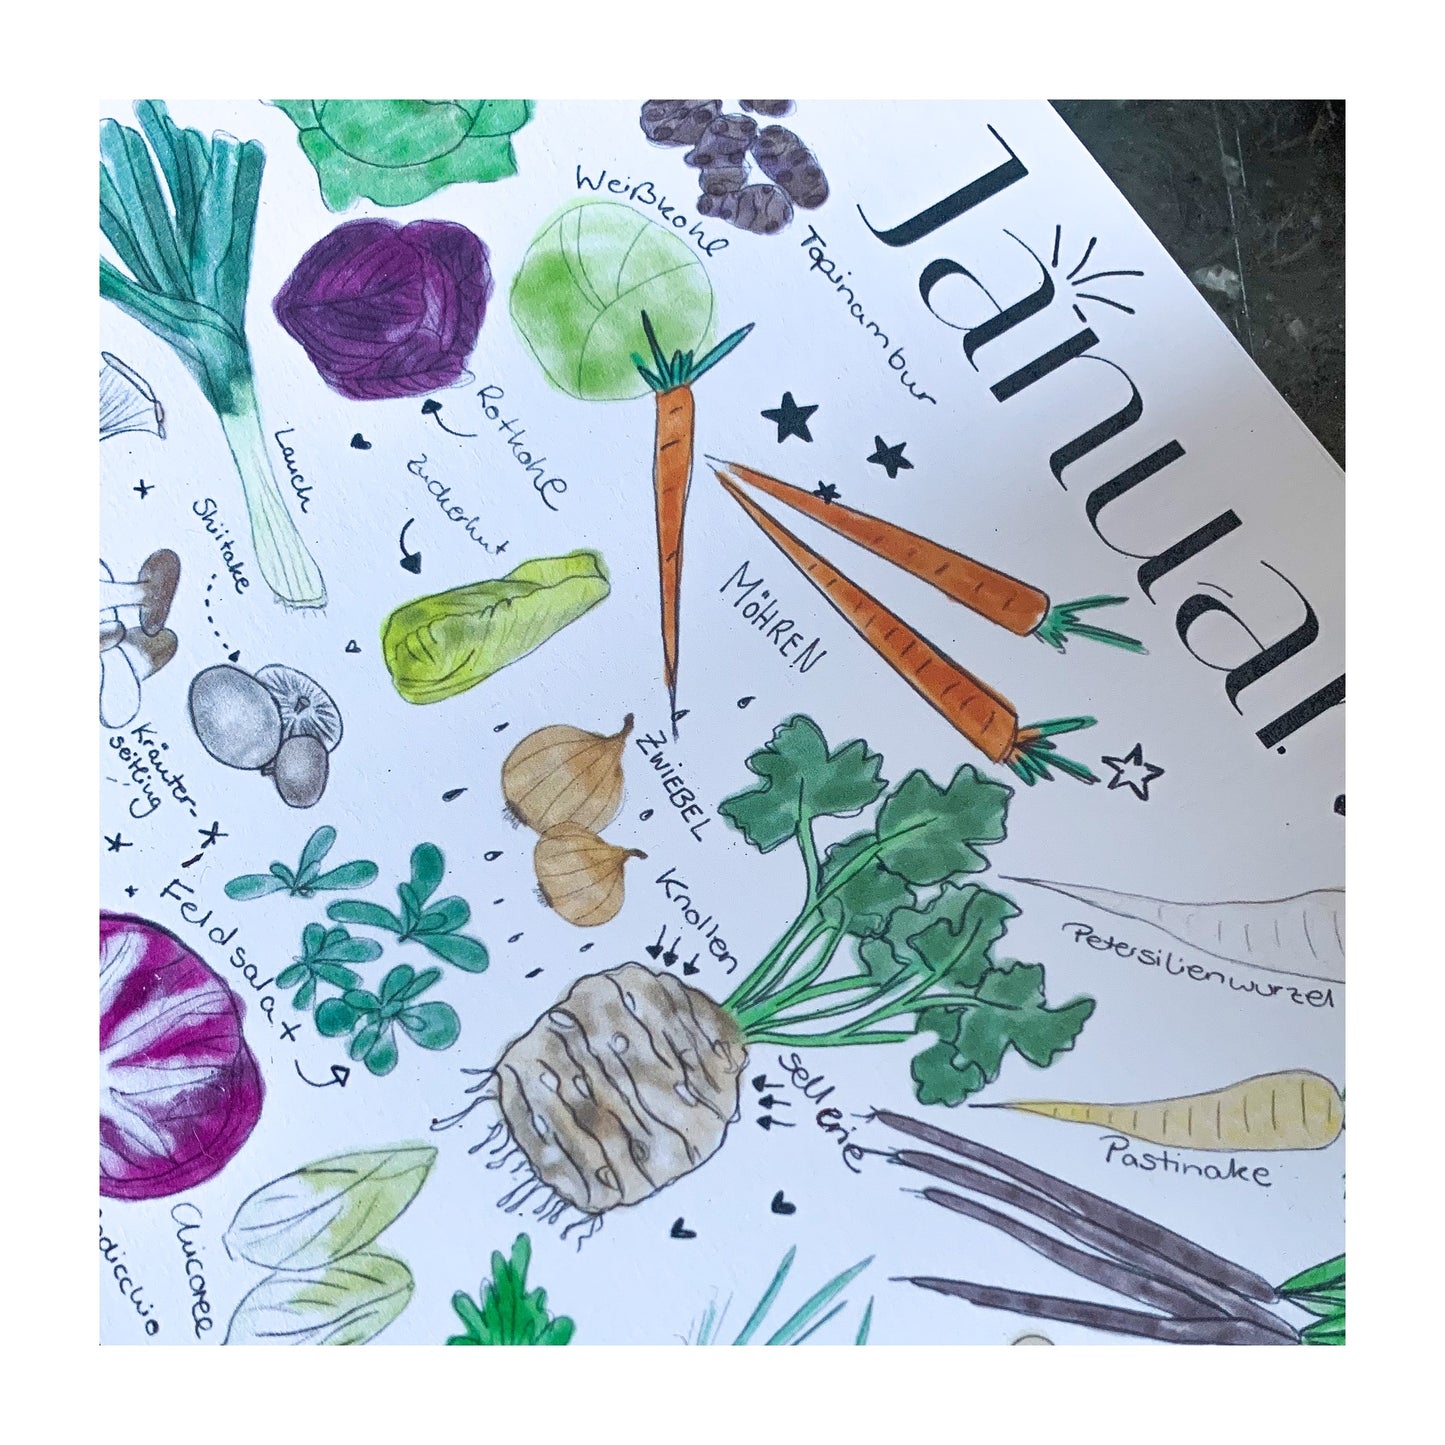 Der Große "Foody", Ewiger Saisonkalender, Heimisches Obst und Gemüse, Handgezeichnet, DinA5 Größe, Aquarell, Artprint, Geschenk